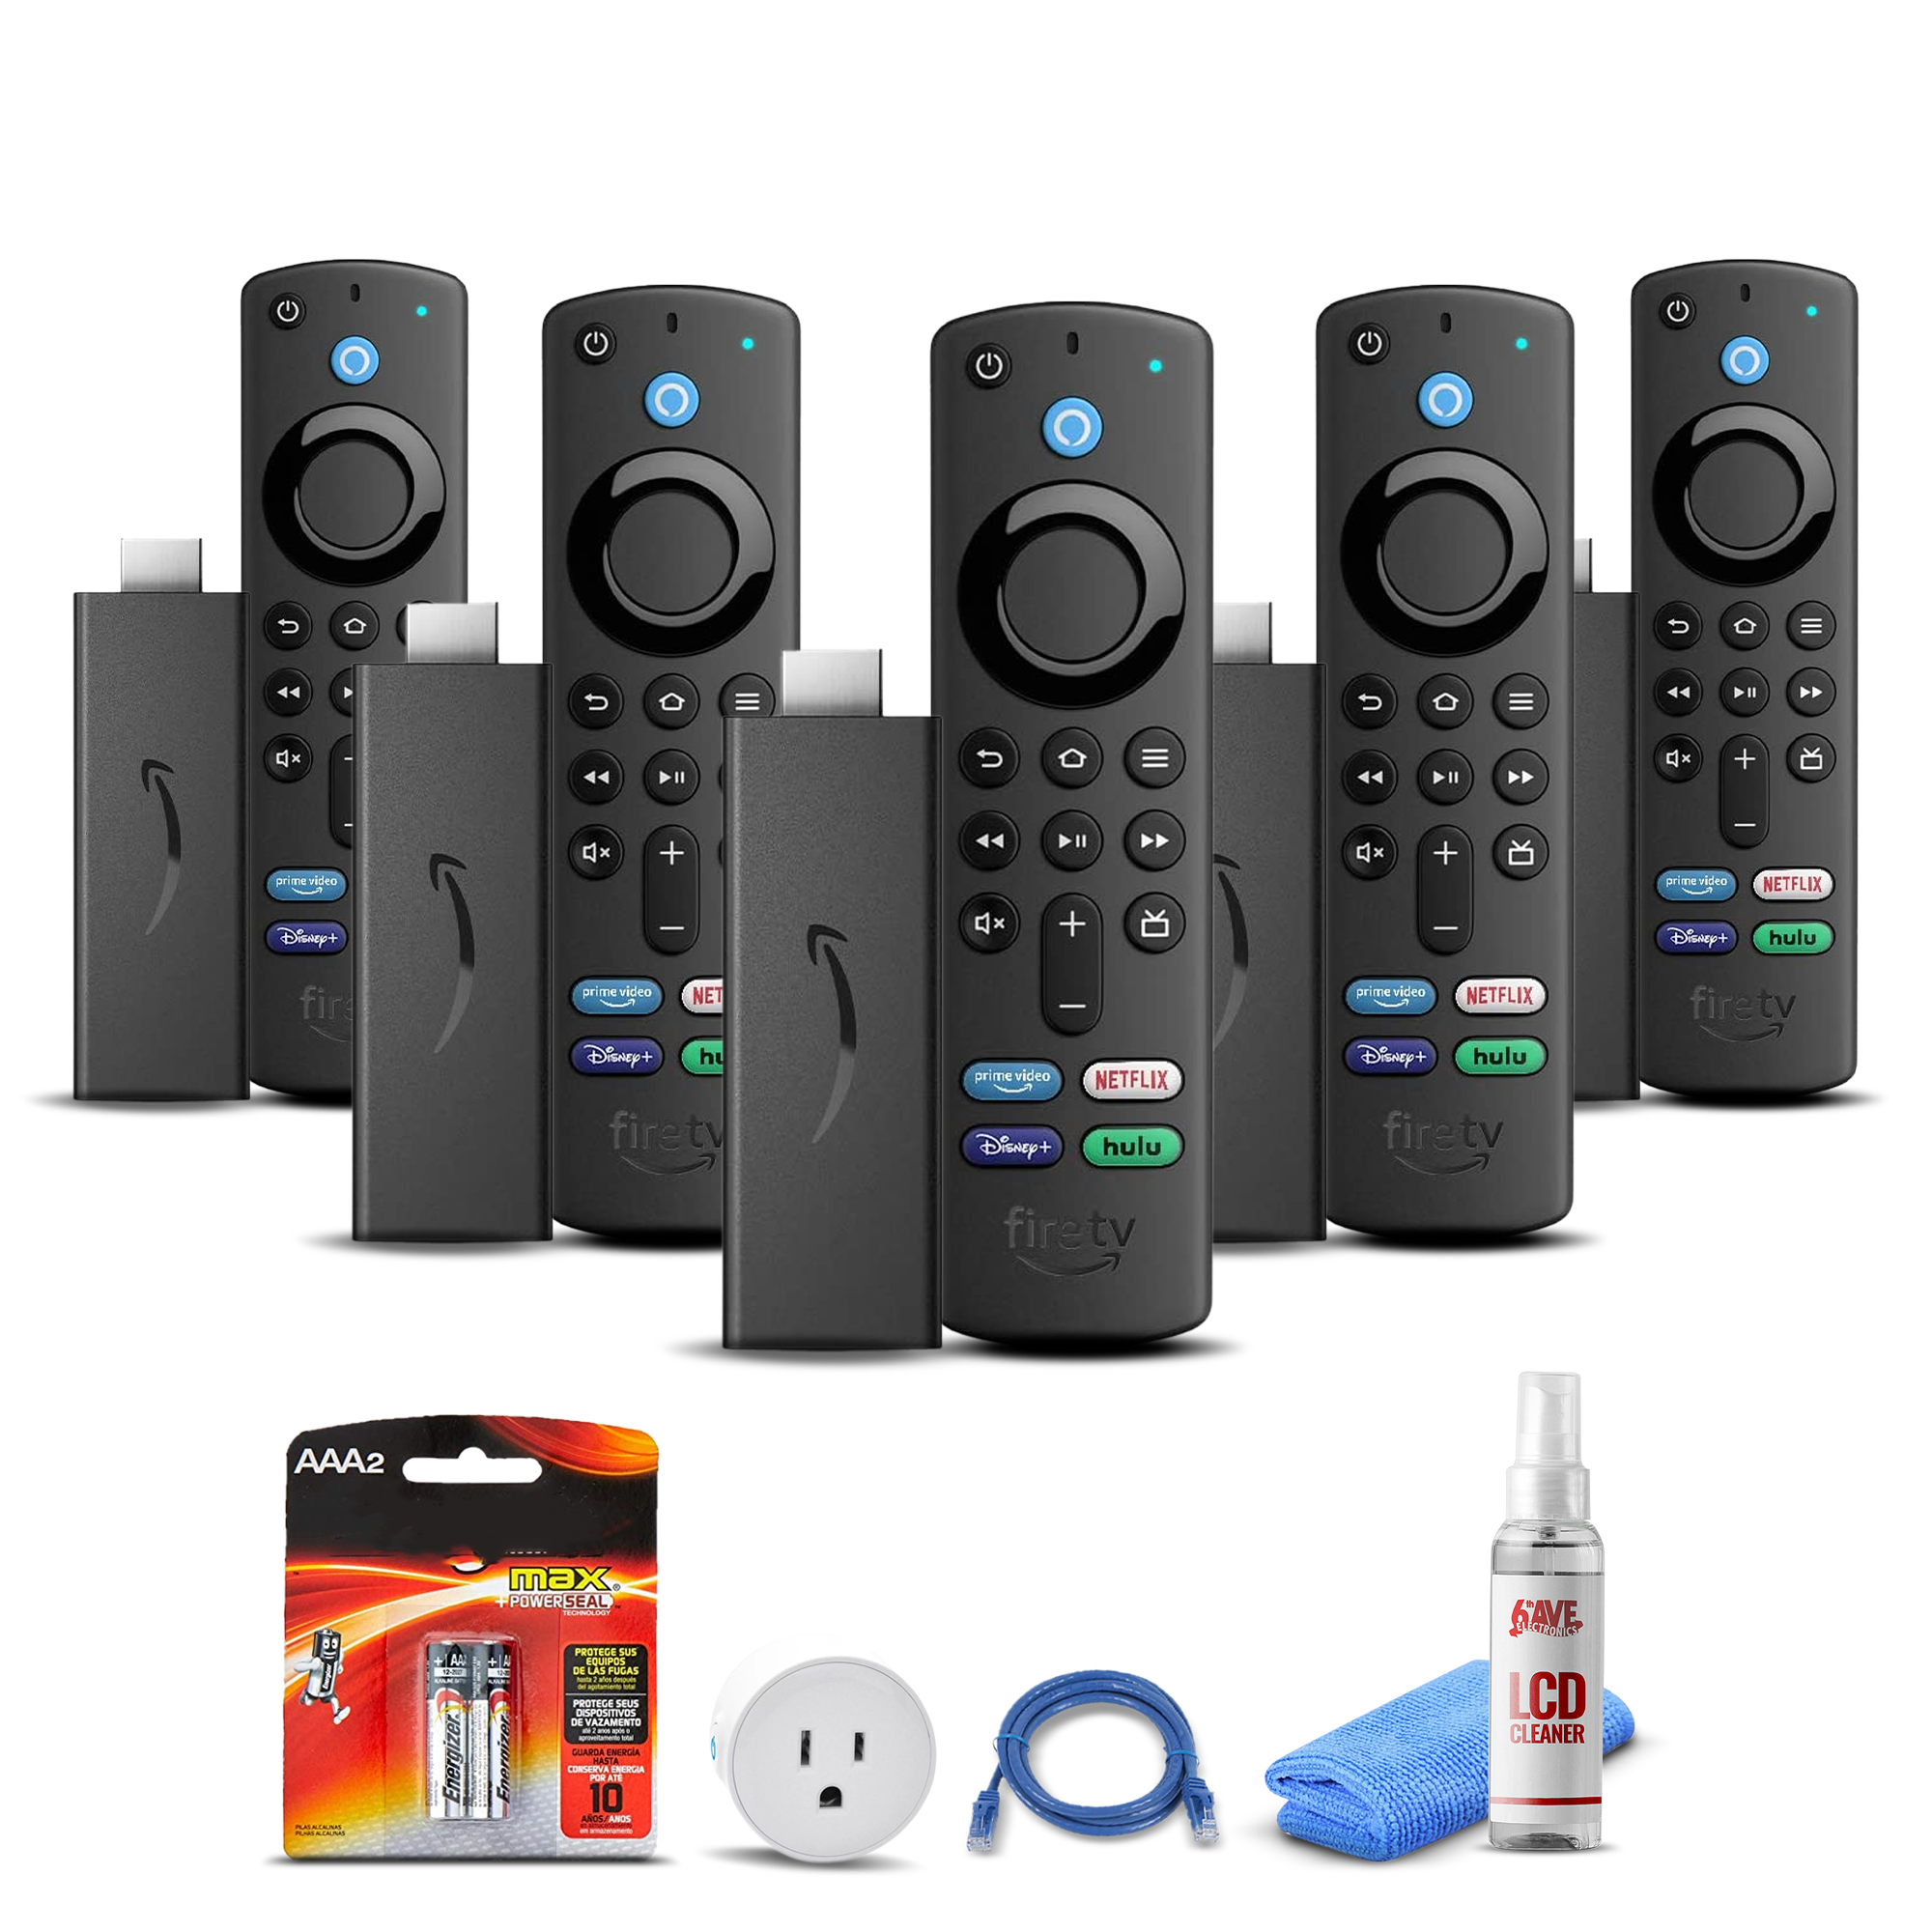 (5) Amazon Fire TV Stick (2021) + Smart Plug + Cat5 Cable + Batteries